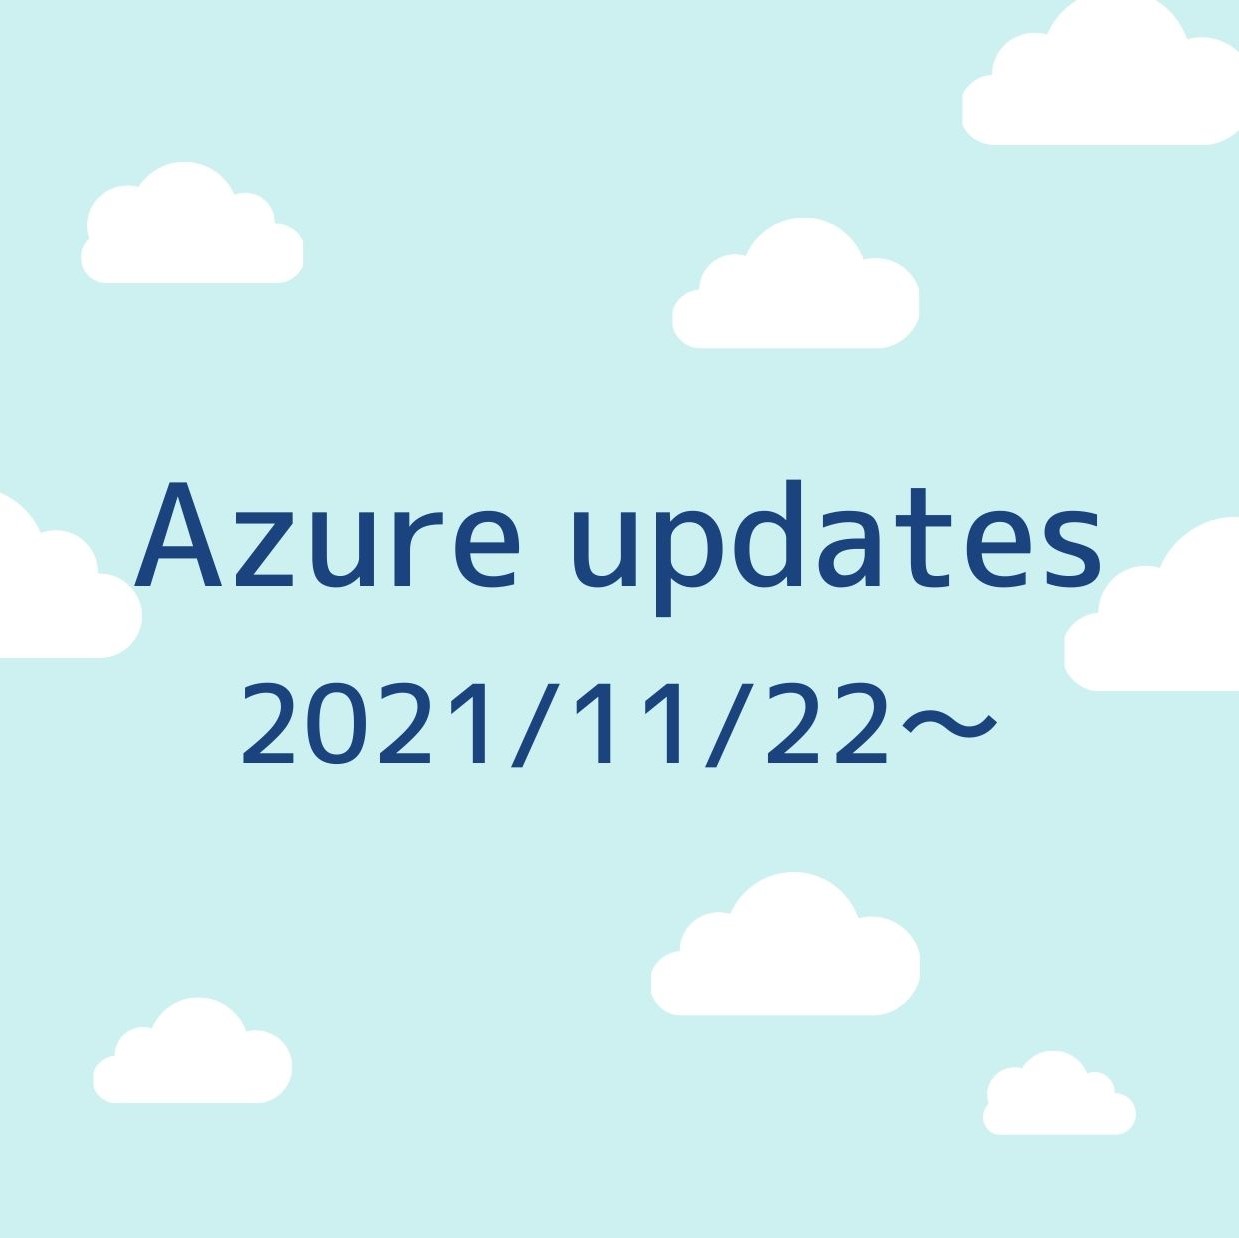 2021/11/22週の Azure updates 日本語速報